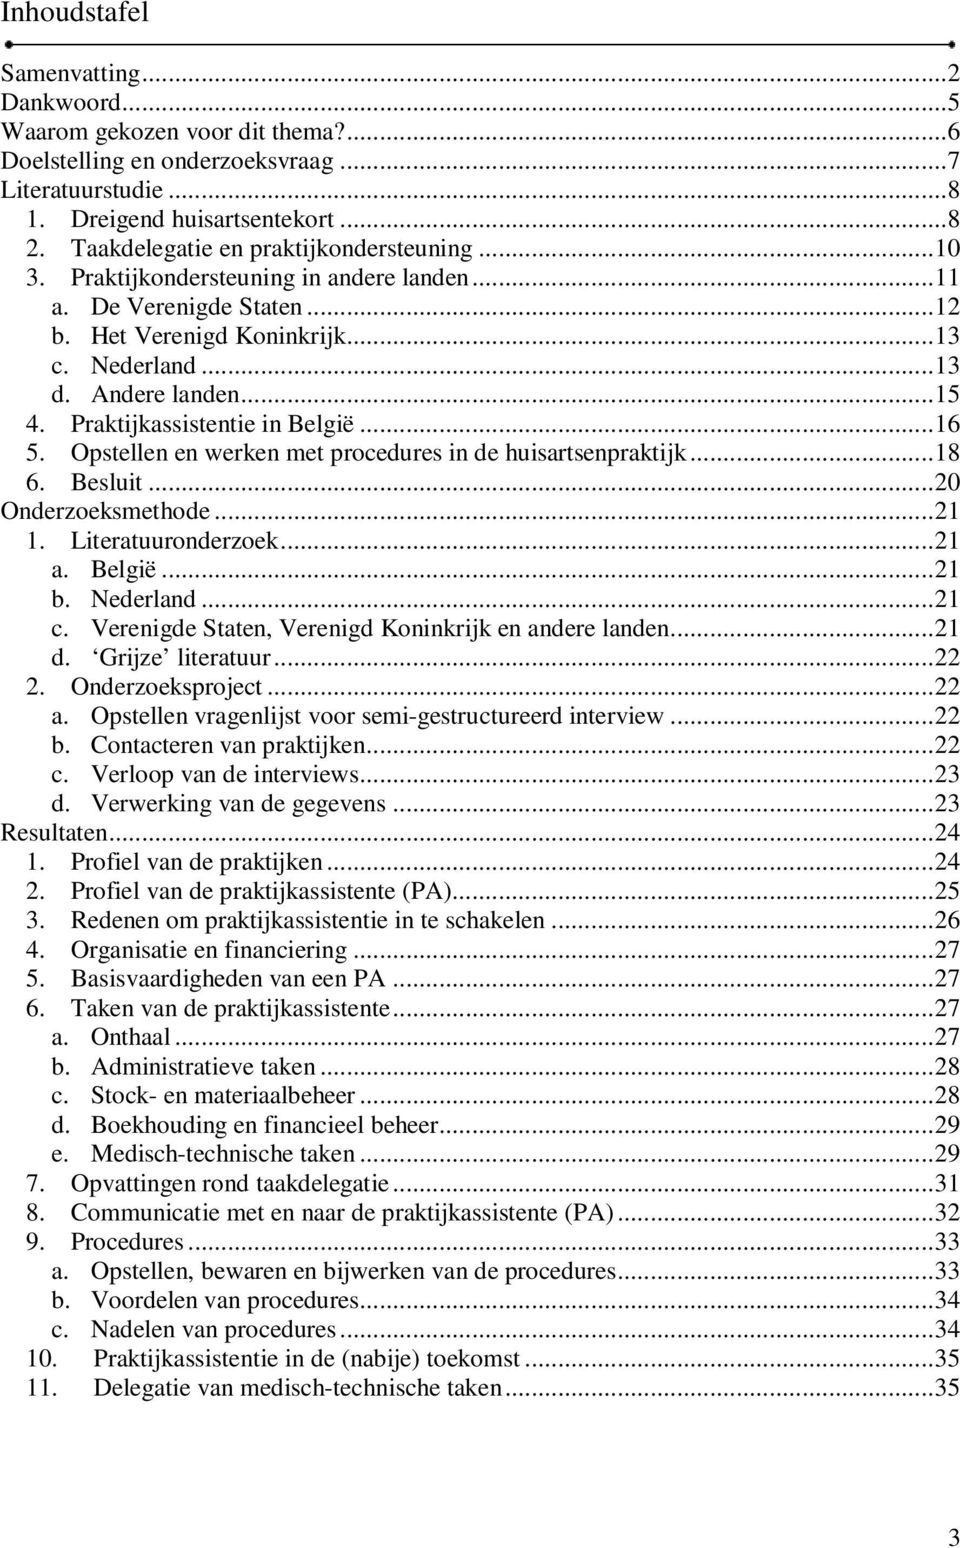 Praktijkassistentie in België... 16 5. Opstellen en werken met procedures in de huisartsenpraktijk... 18 6. Besluit... 20 Onderzoeksmethode... 21 1. Literatuuronderzoek... 21 a. België... 21 b.